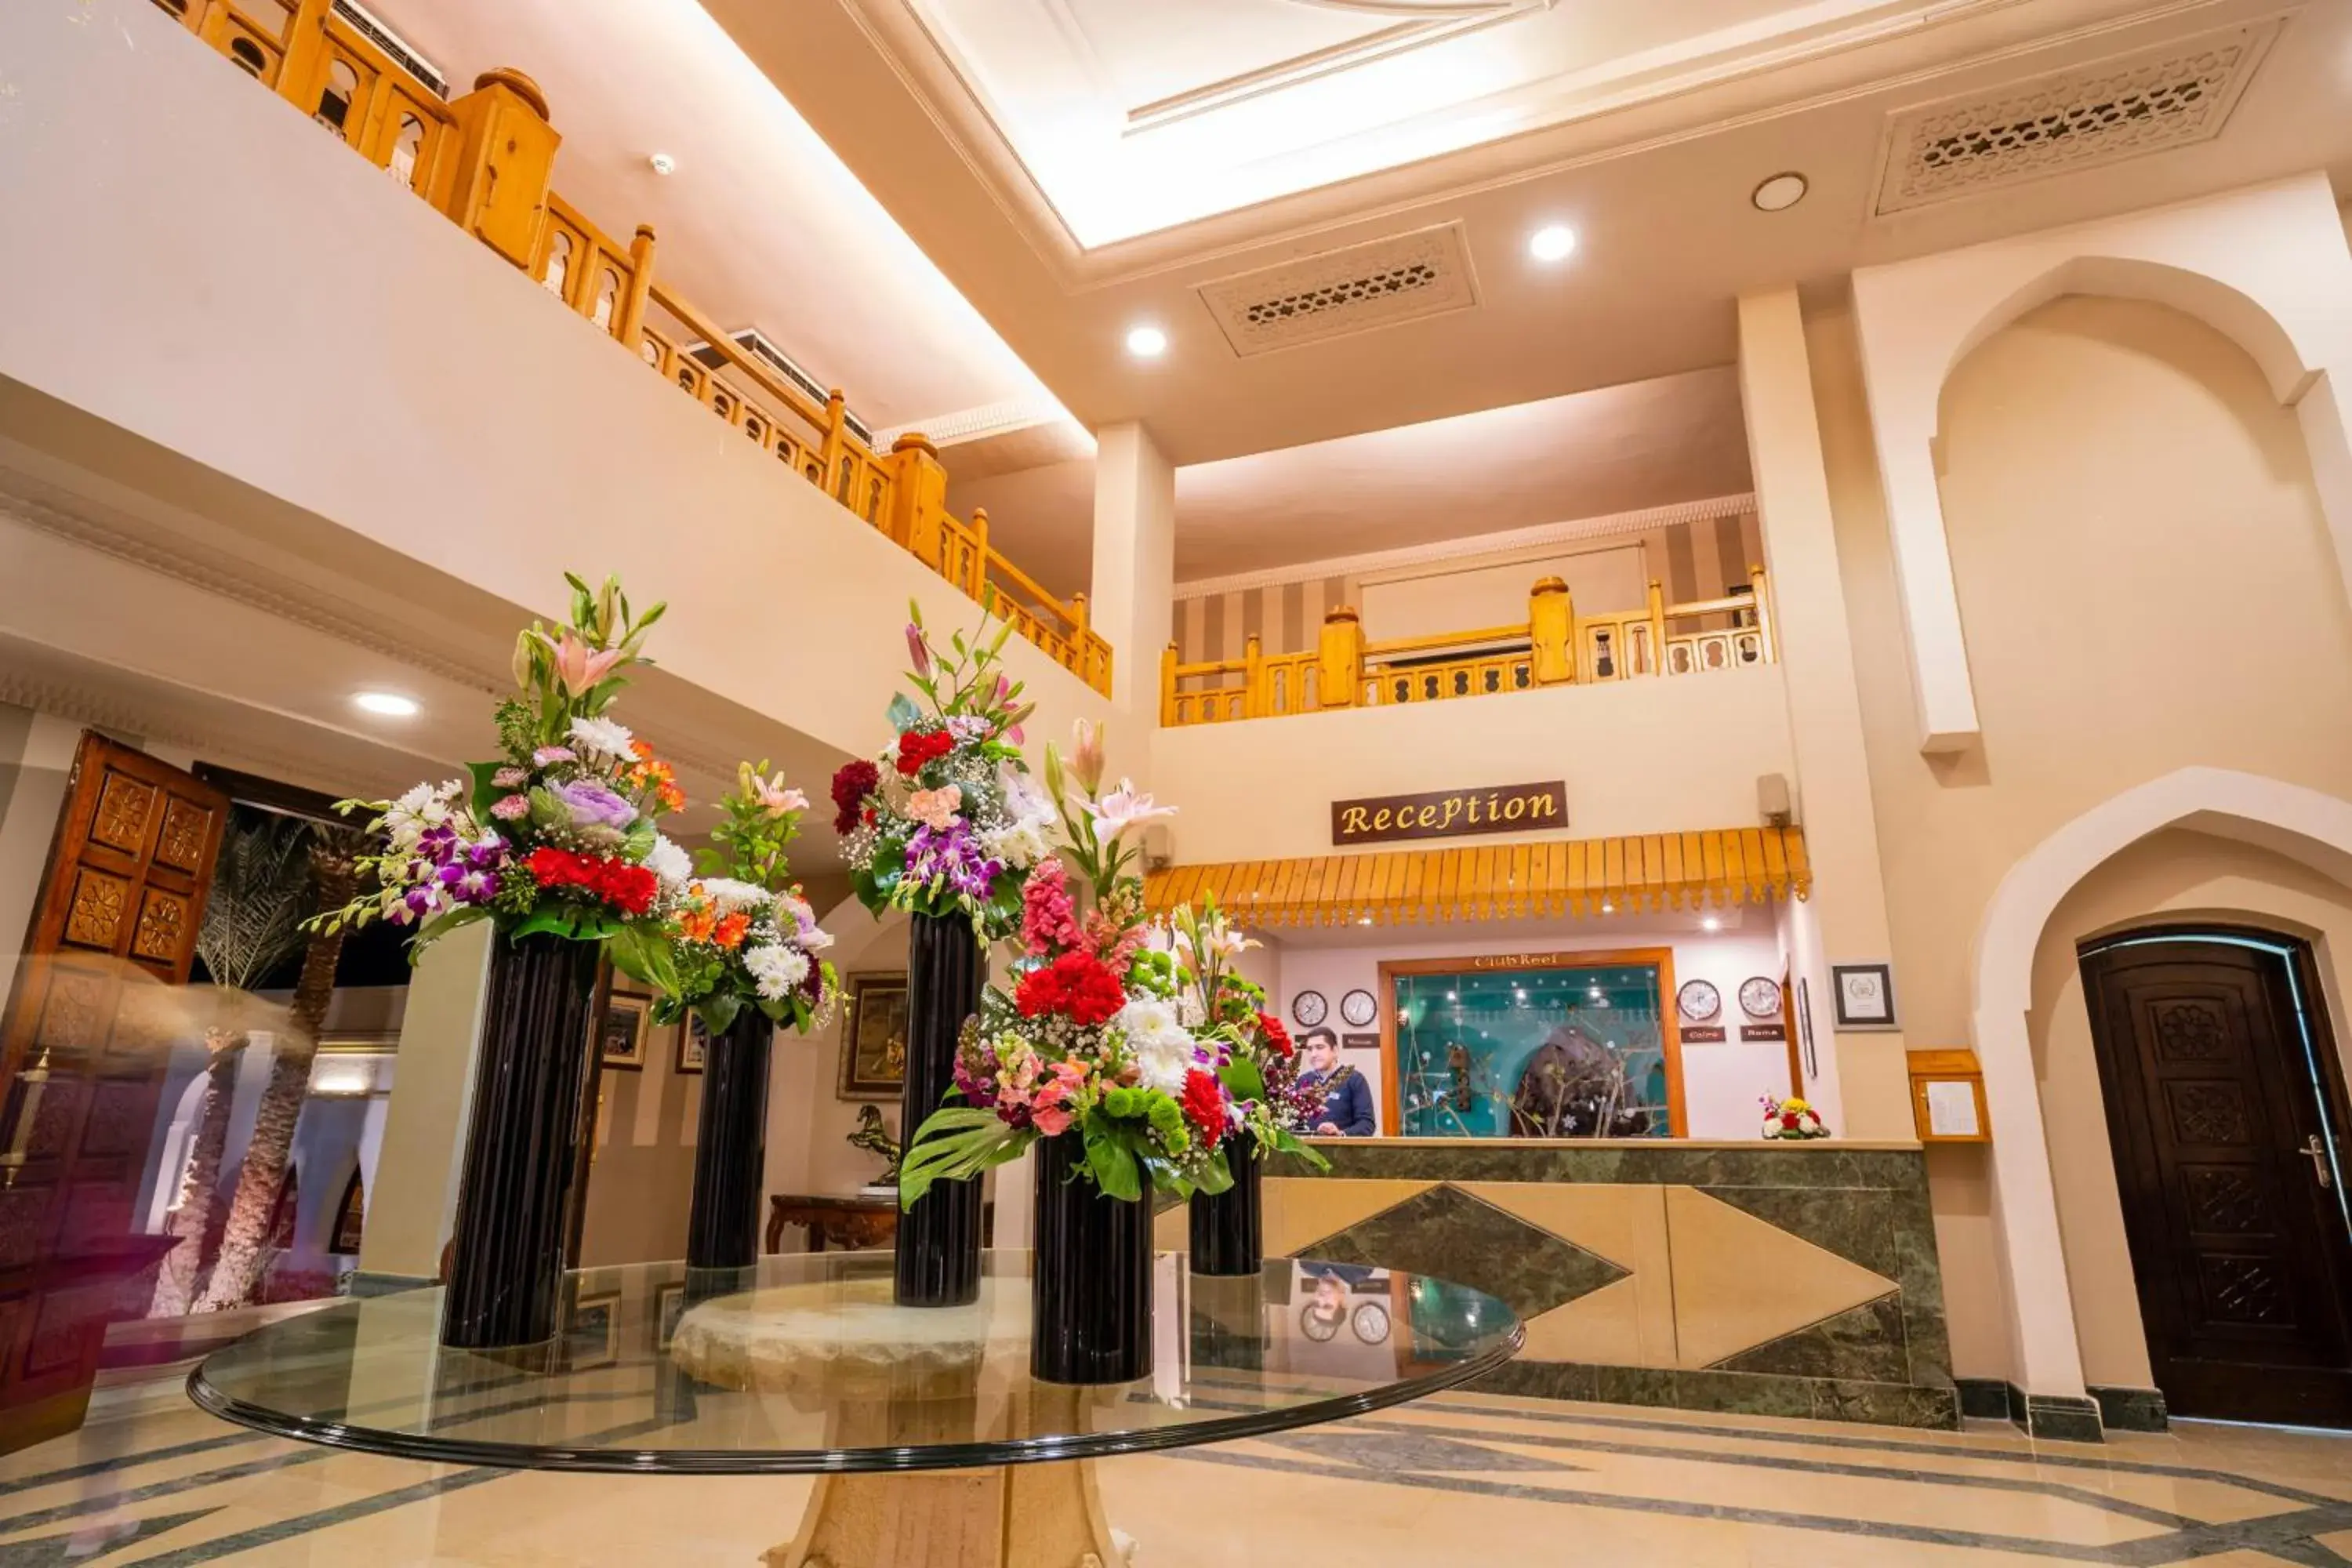 Lobby or reception, Lobby/Reception in Club Reef Resort